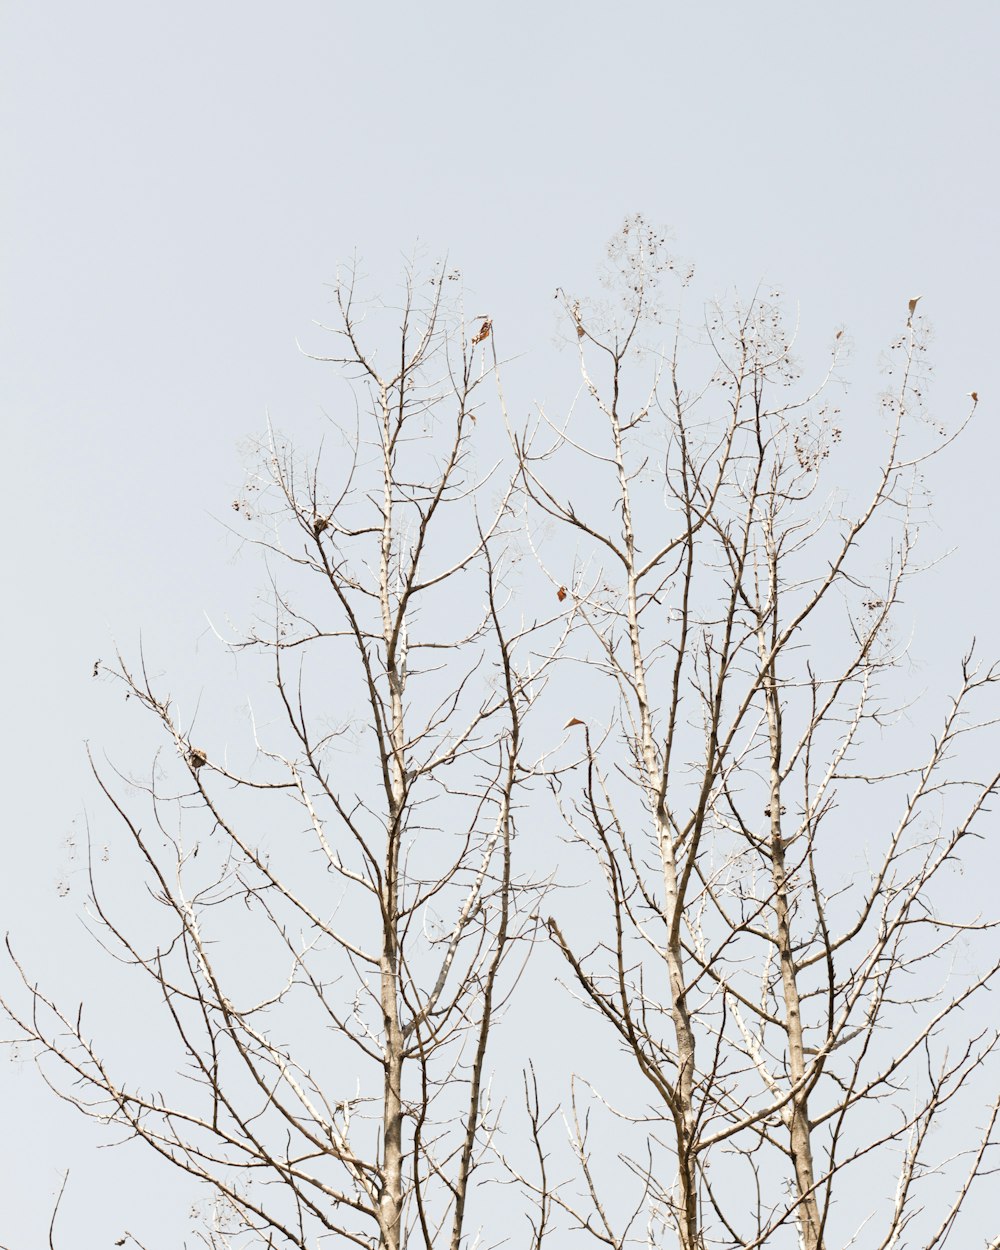 albero senza foglie marrone sotto il cielo bianco